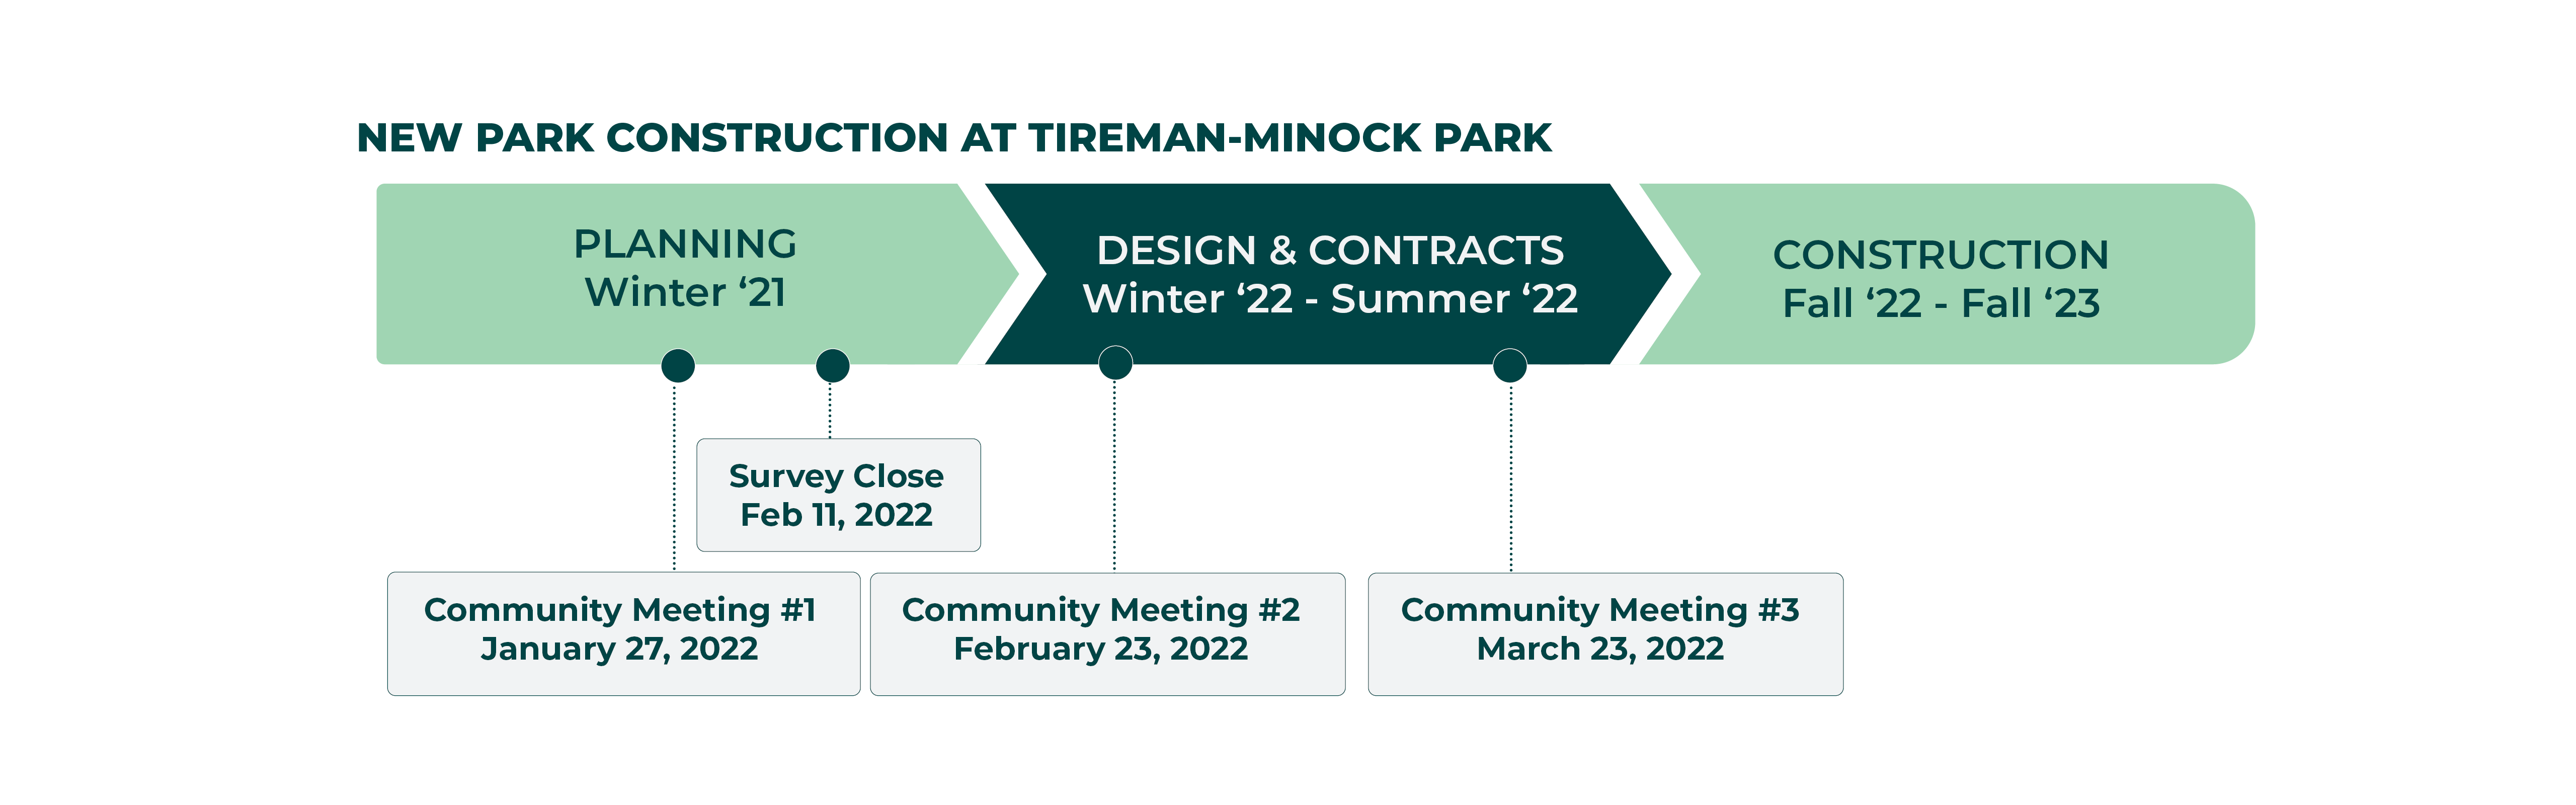 Revised Timeline for Tireman-Minock Park Completion